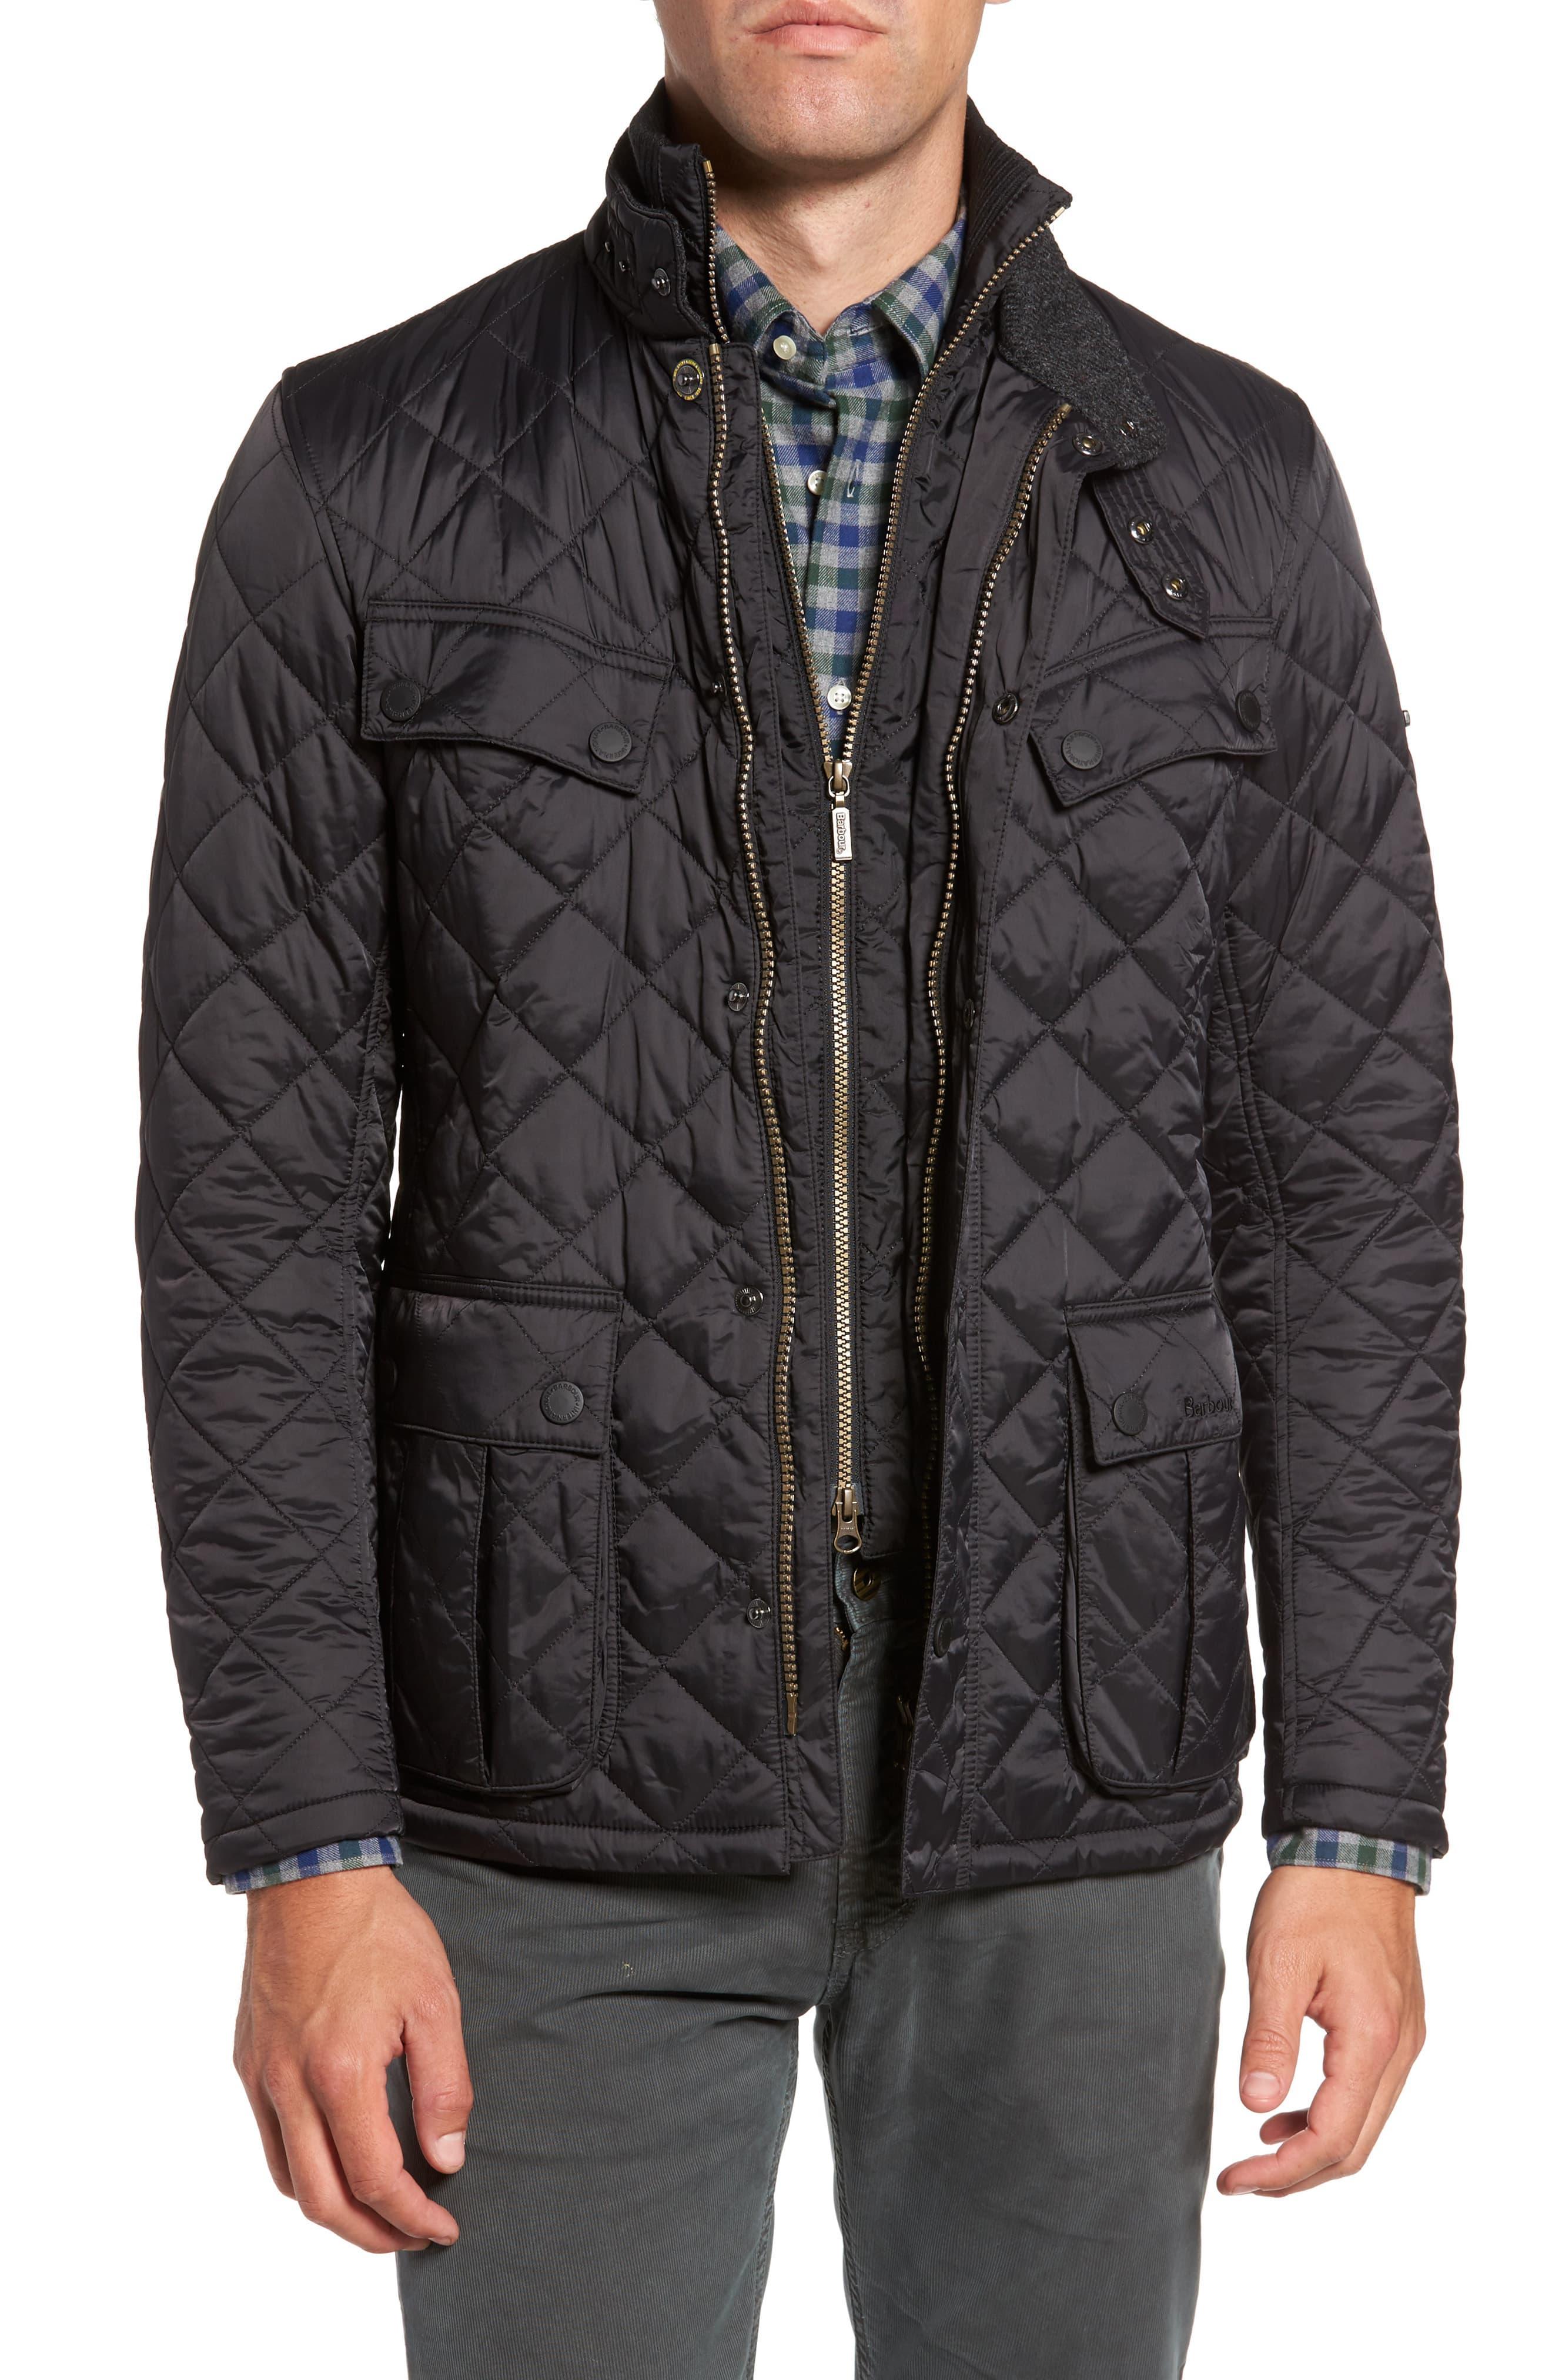 Barbour Jacket Black Quilted - jacketl